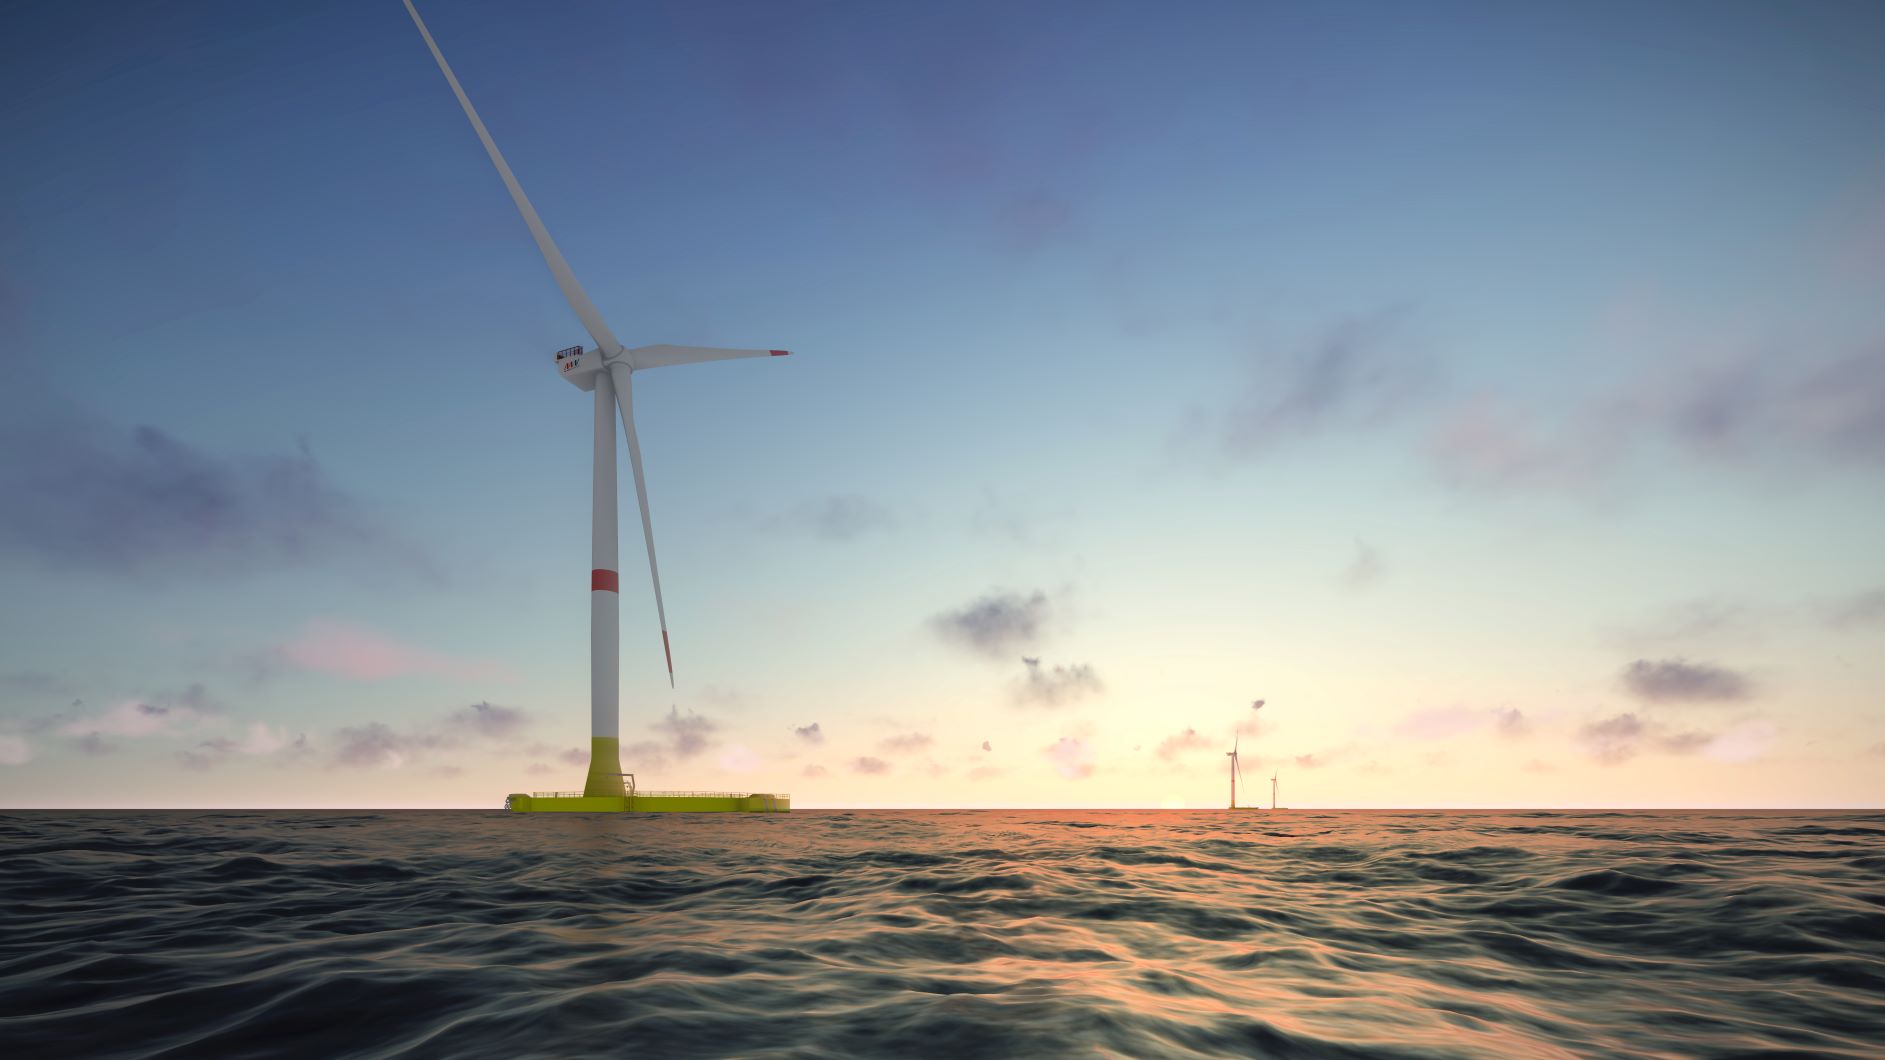 Artist impression of EolMed floating wind turbine at sea